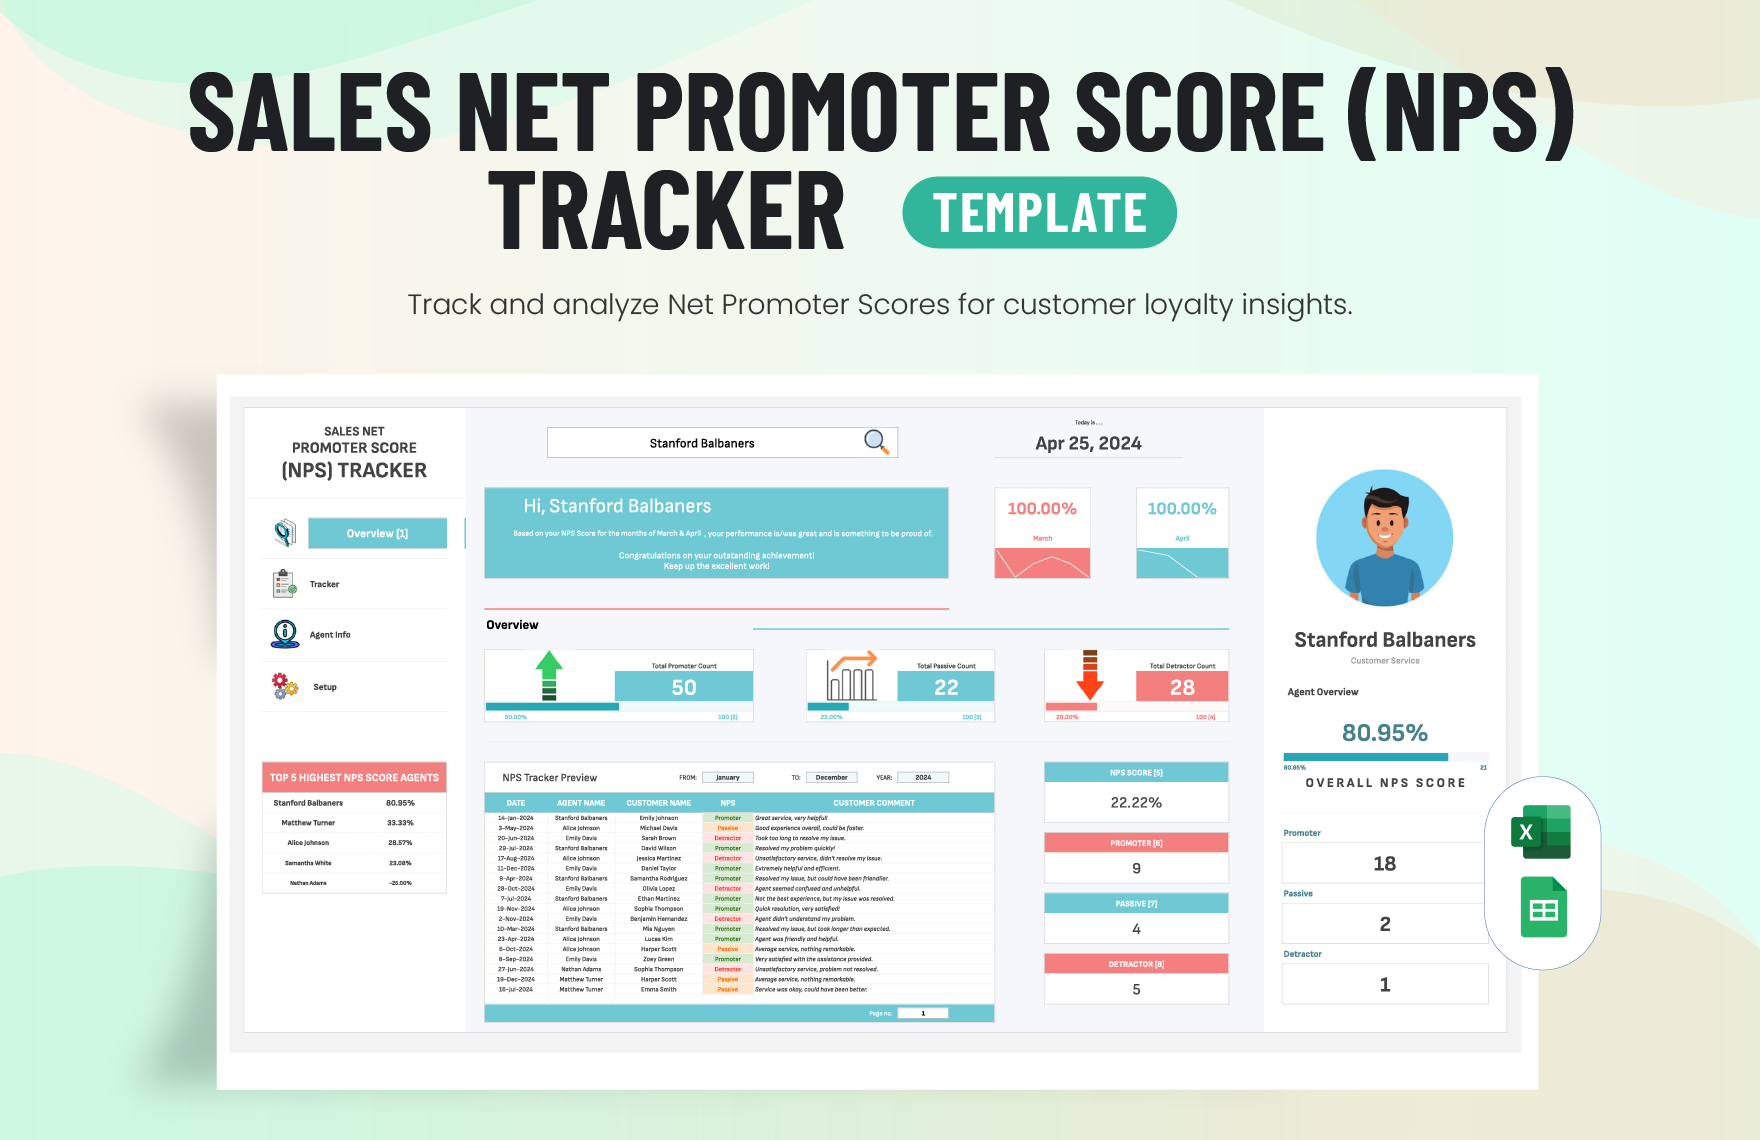 Sales Net Promoter Score (NPS) Tracker Template